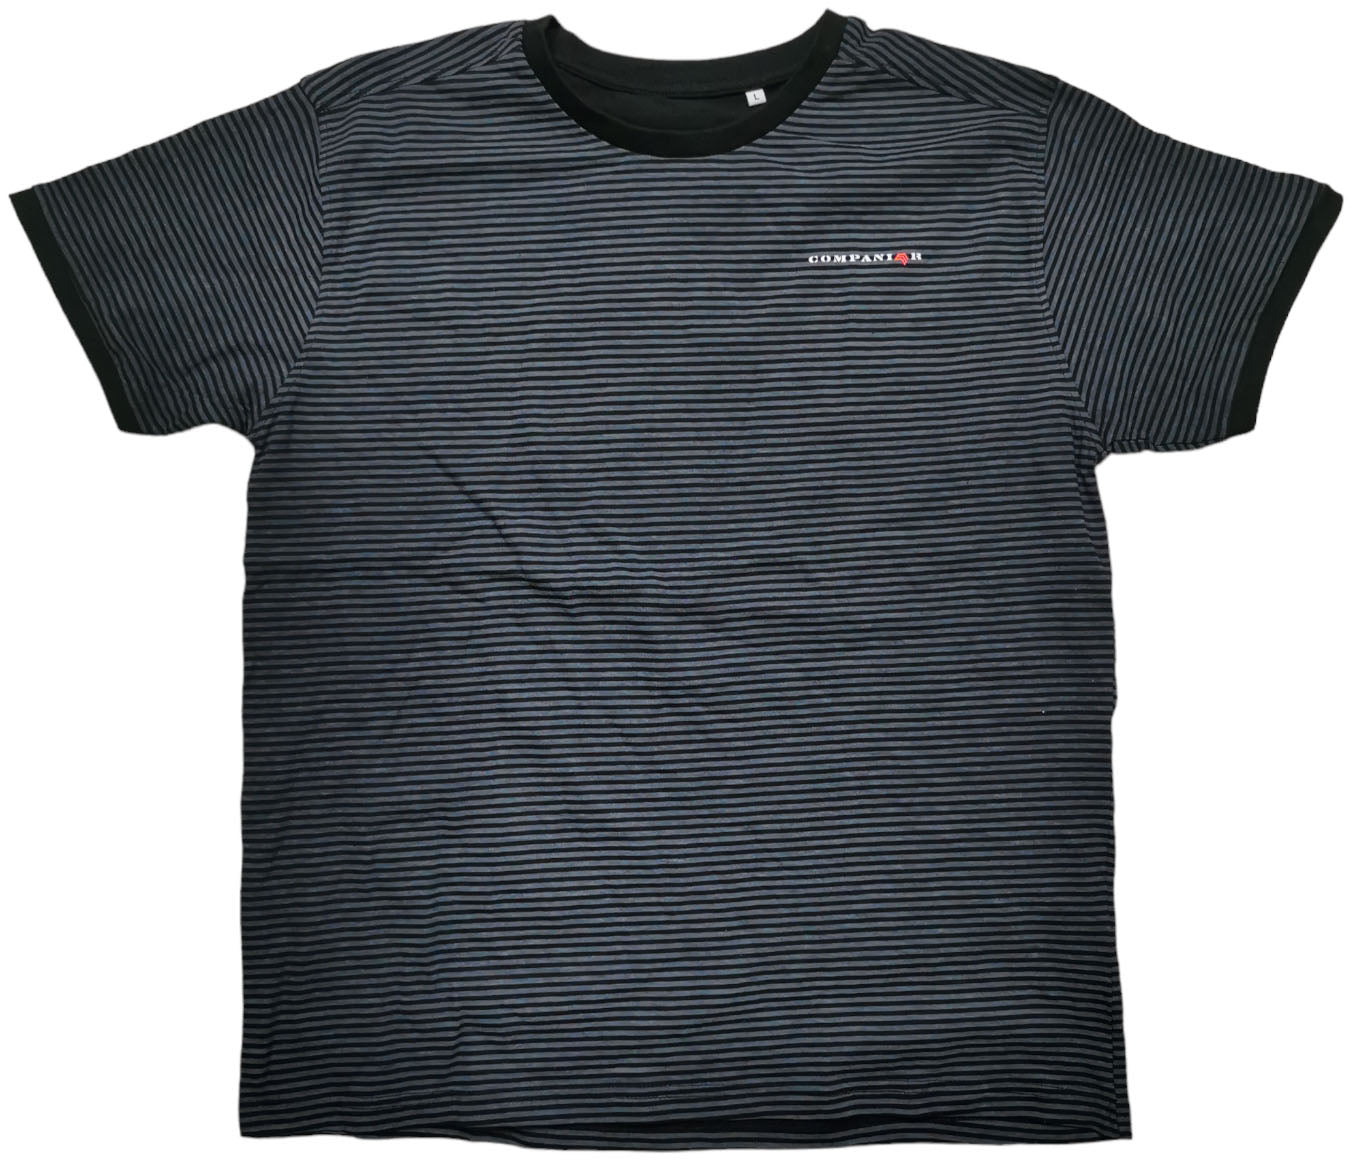 ― % ― NTH 0351/21A ― Striped T-Shirt - Schwarz / Grau [L]